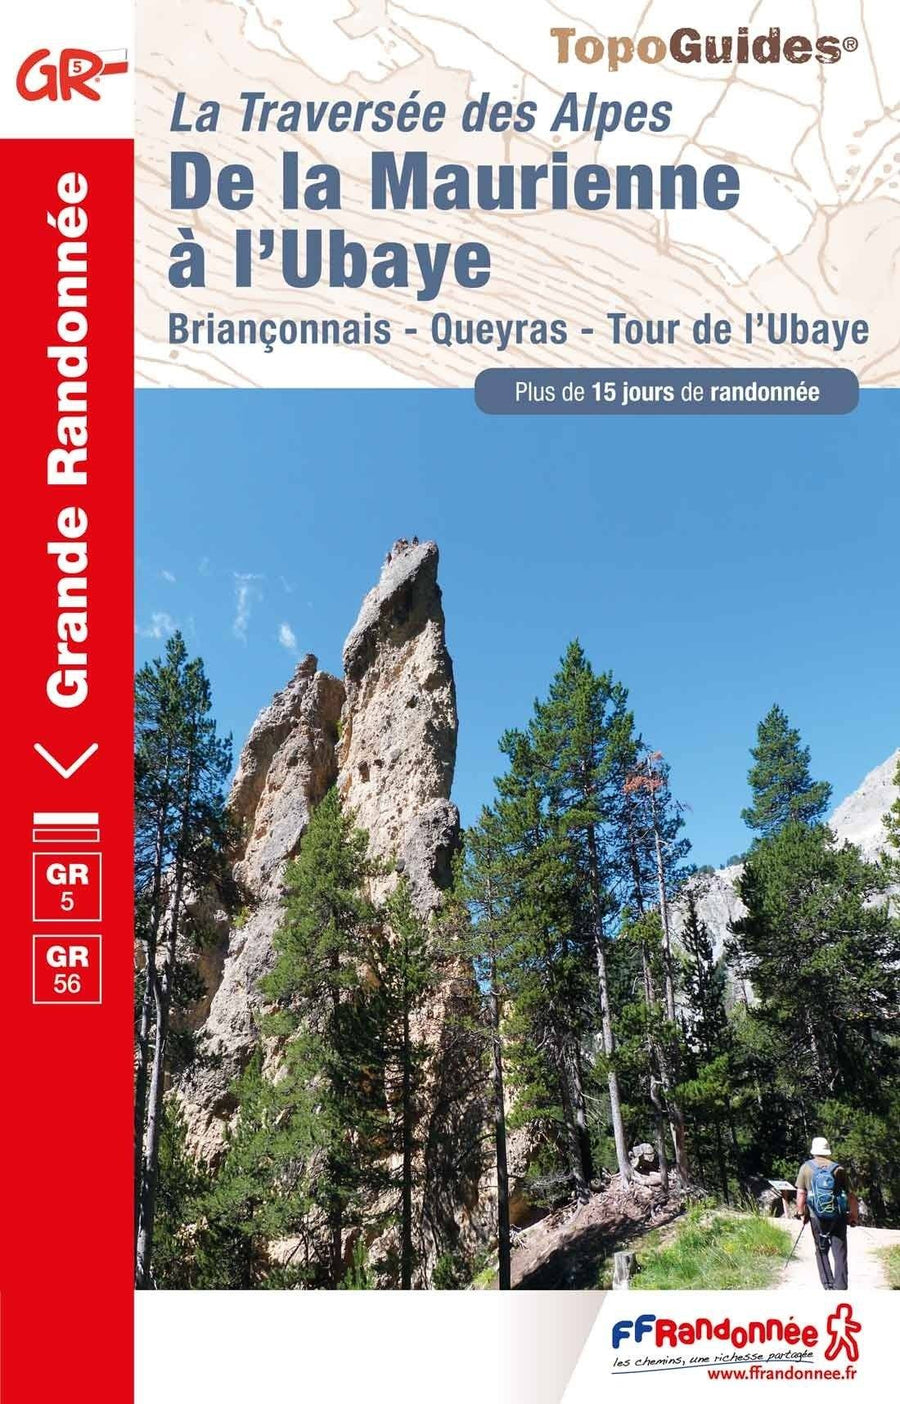 Topoguide de randonnée - La traversée des Alpes, de la Maurienne à l'Ubaye | FFR guide de randonnée FFR - Fédération Française de Randonnée 